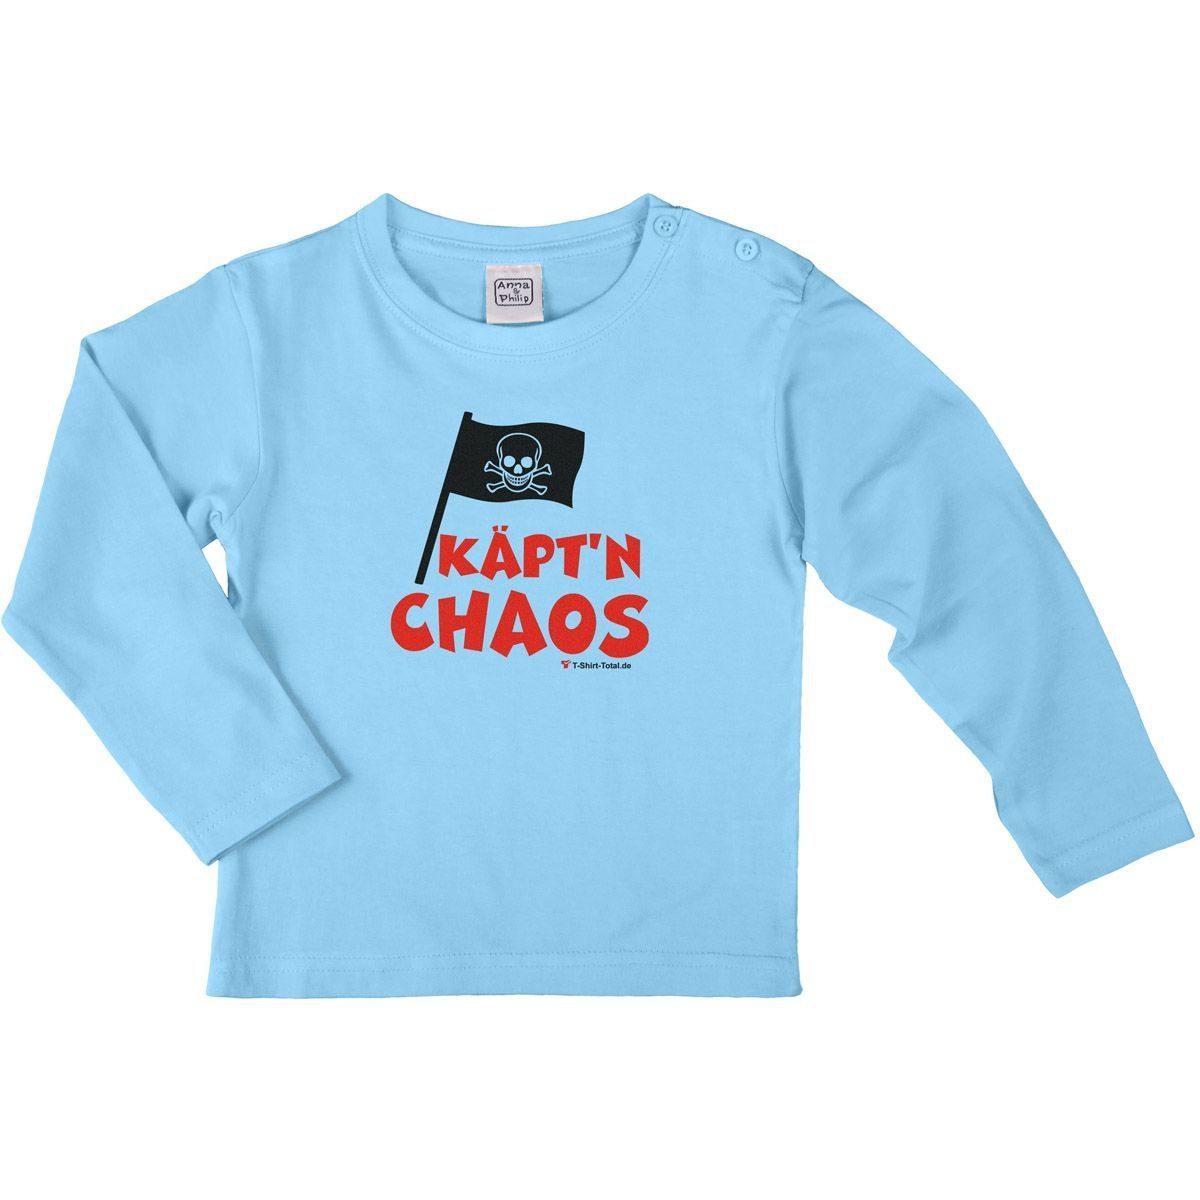 Käptn Chaos Kinder Langarm Shirt hellblau 134 / 140